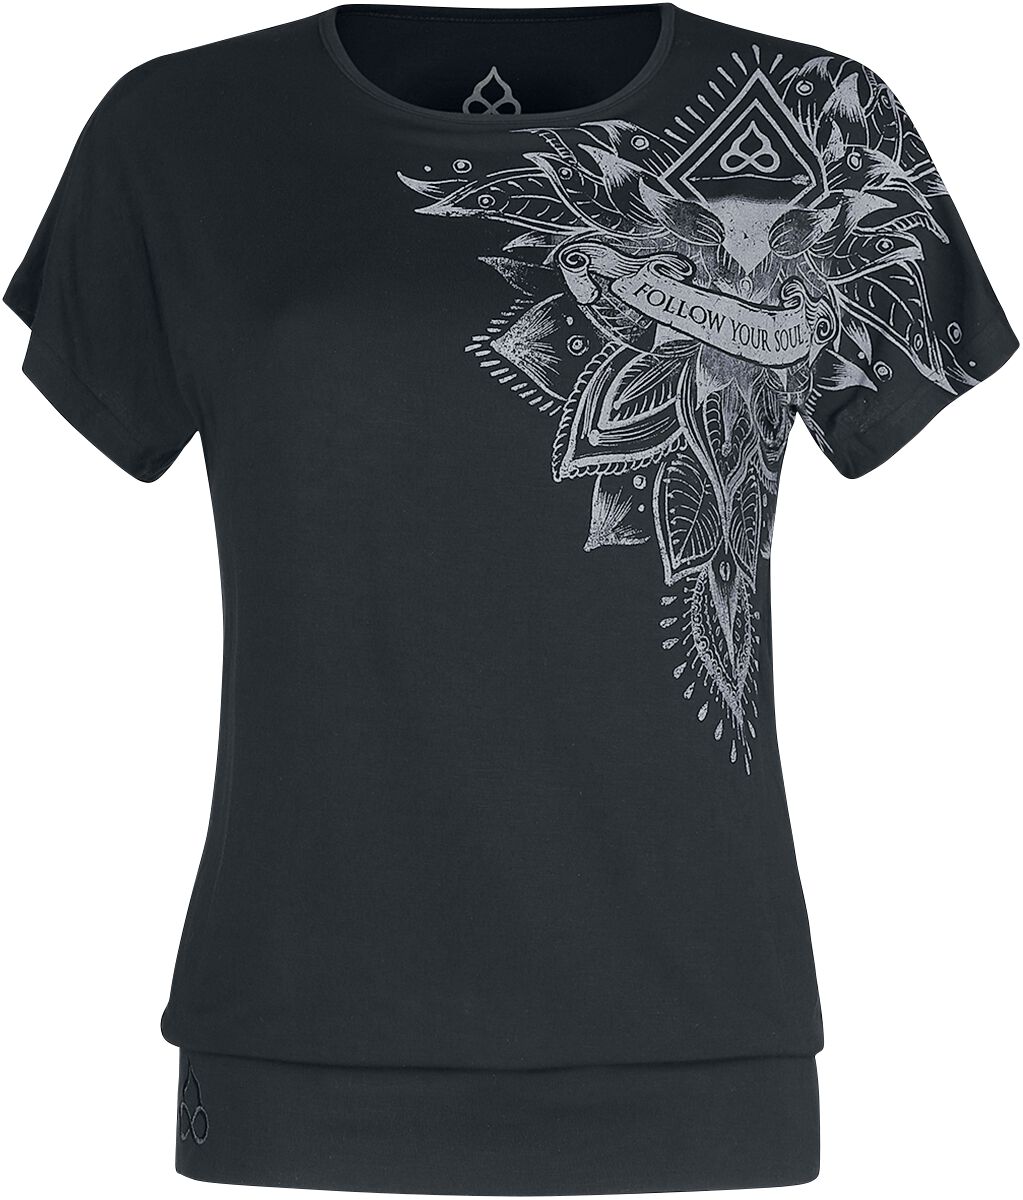 EMP Special Collection T-Shirt - Sport und Yoga - Schwarzes lockeres T-Shirt mit detailreichem Print - M bis 4XL - für Damen - Größe XL - schwarz